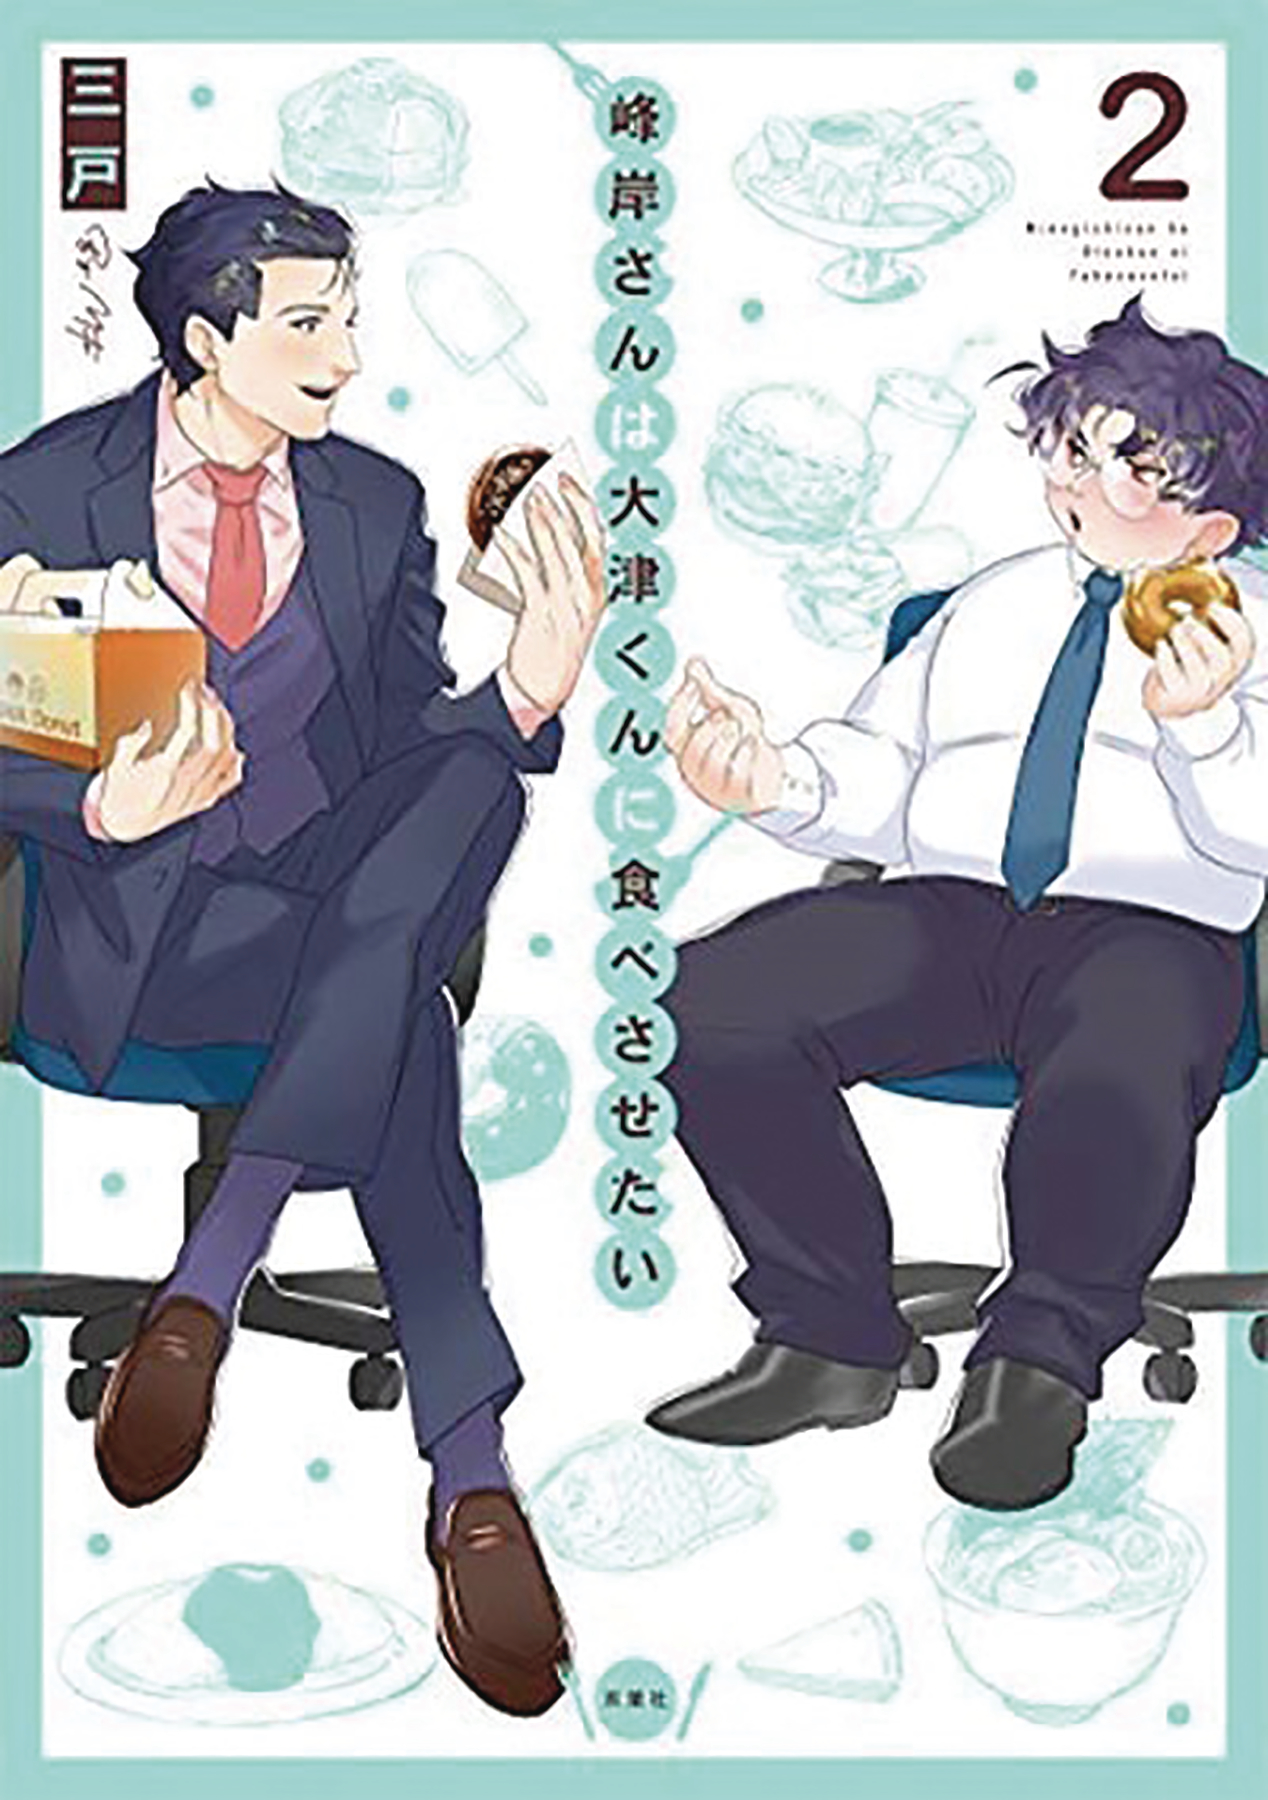 Manly Appetites Minegishi Loves Otsu Manga Volume 2 (Mature)